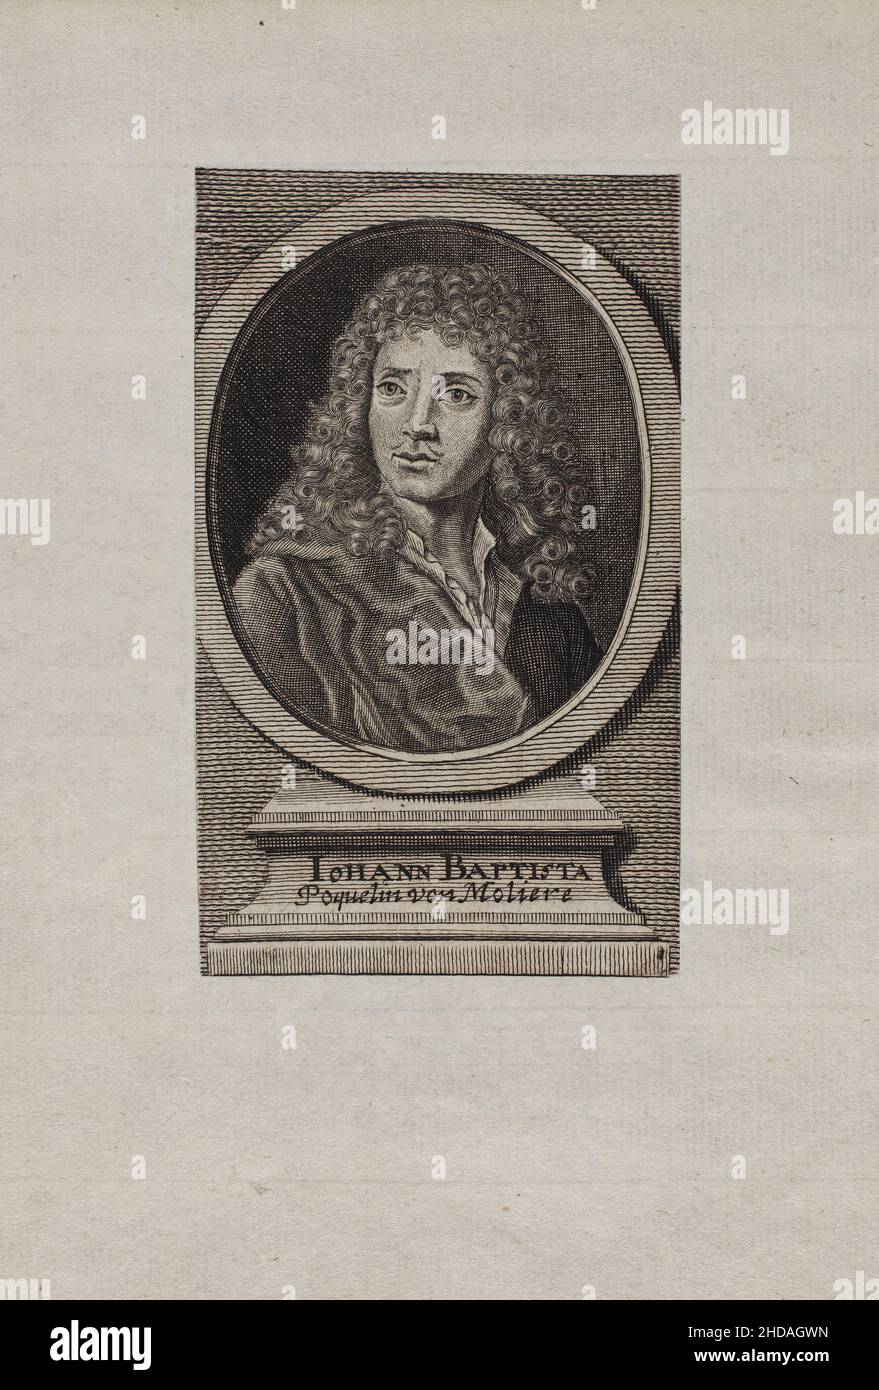 Gravure de Iohann Baptista Poquelin von Moliere.1660 Jean-Baptiste Poquelin (1622 – 1673), connu sous le nom de Molière, est un dramaturge français Banque D'Images